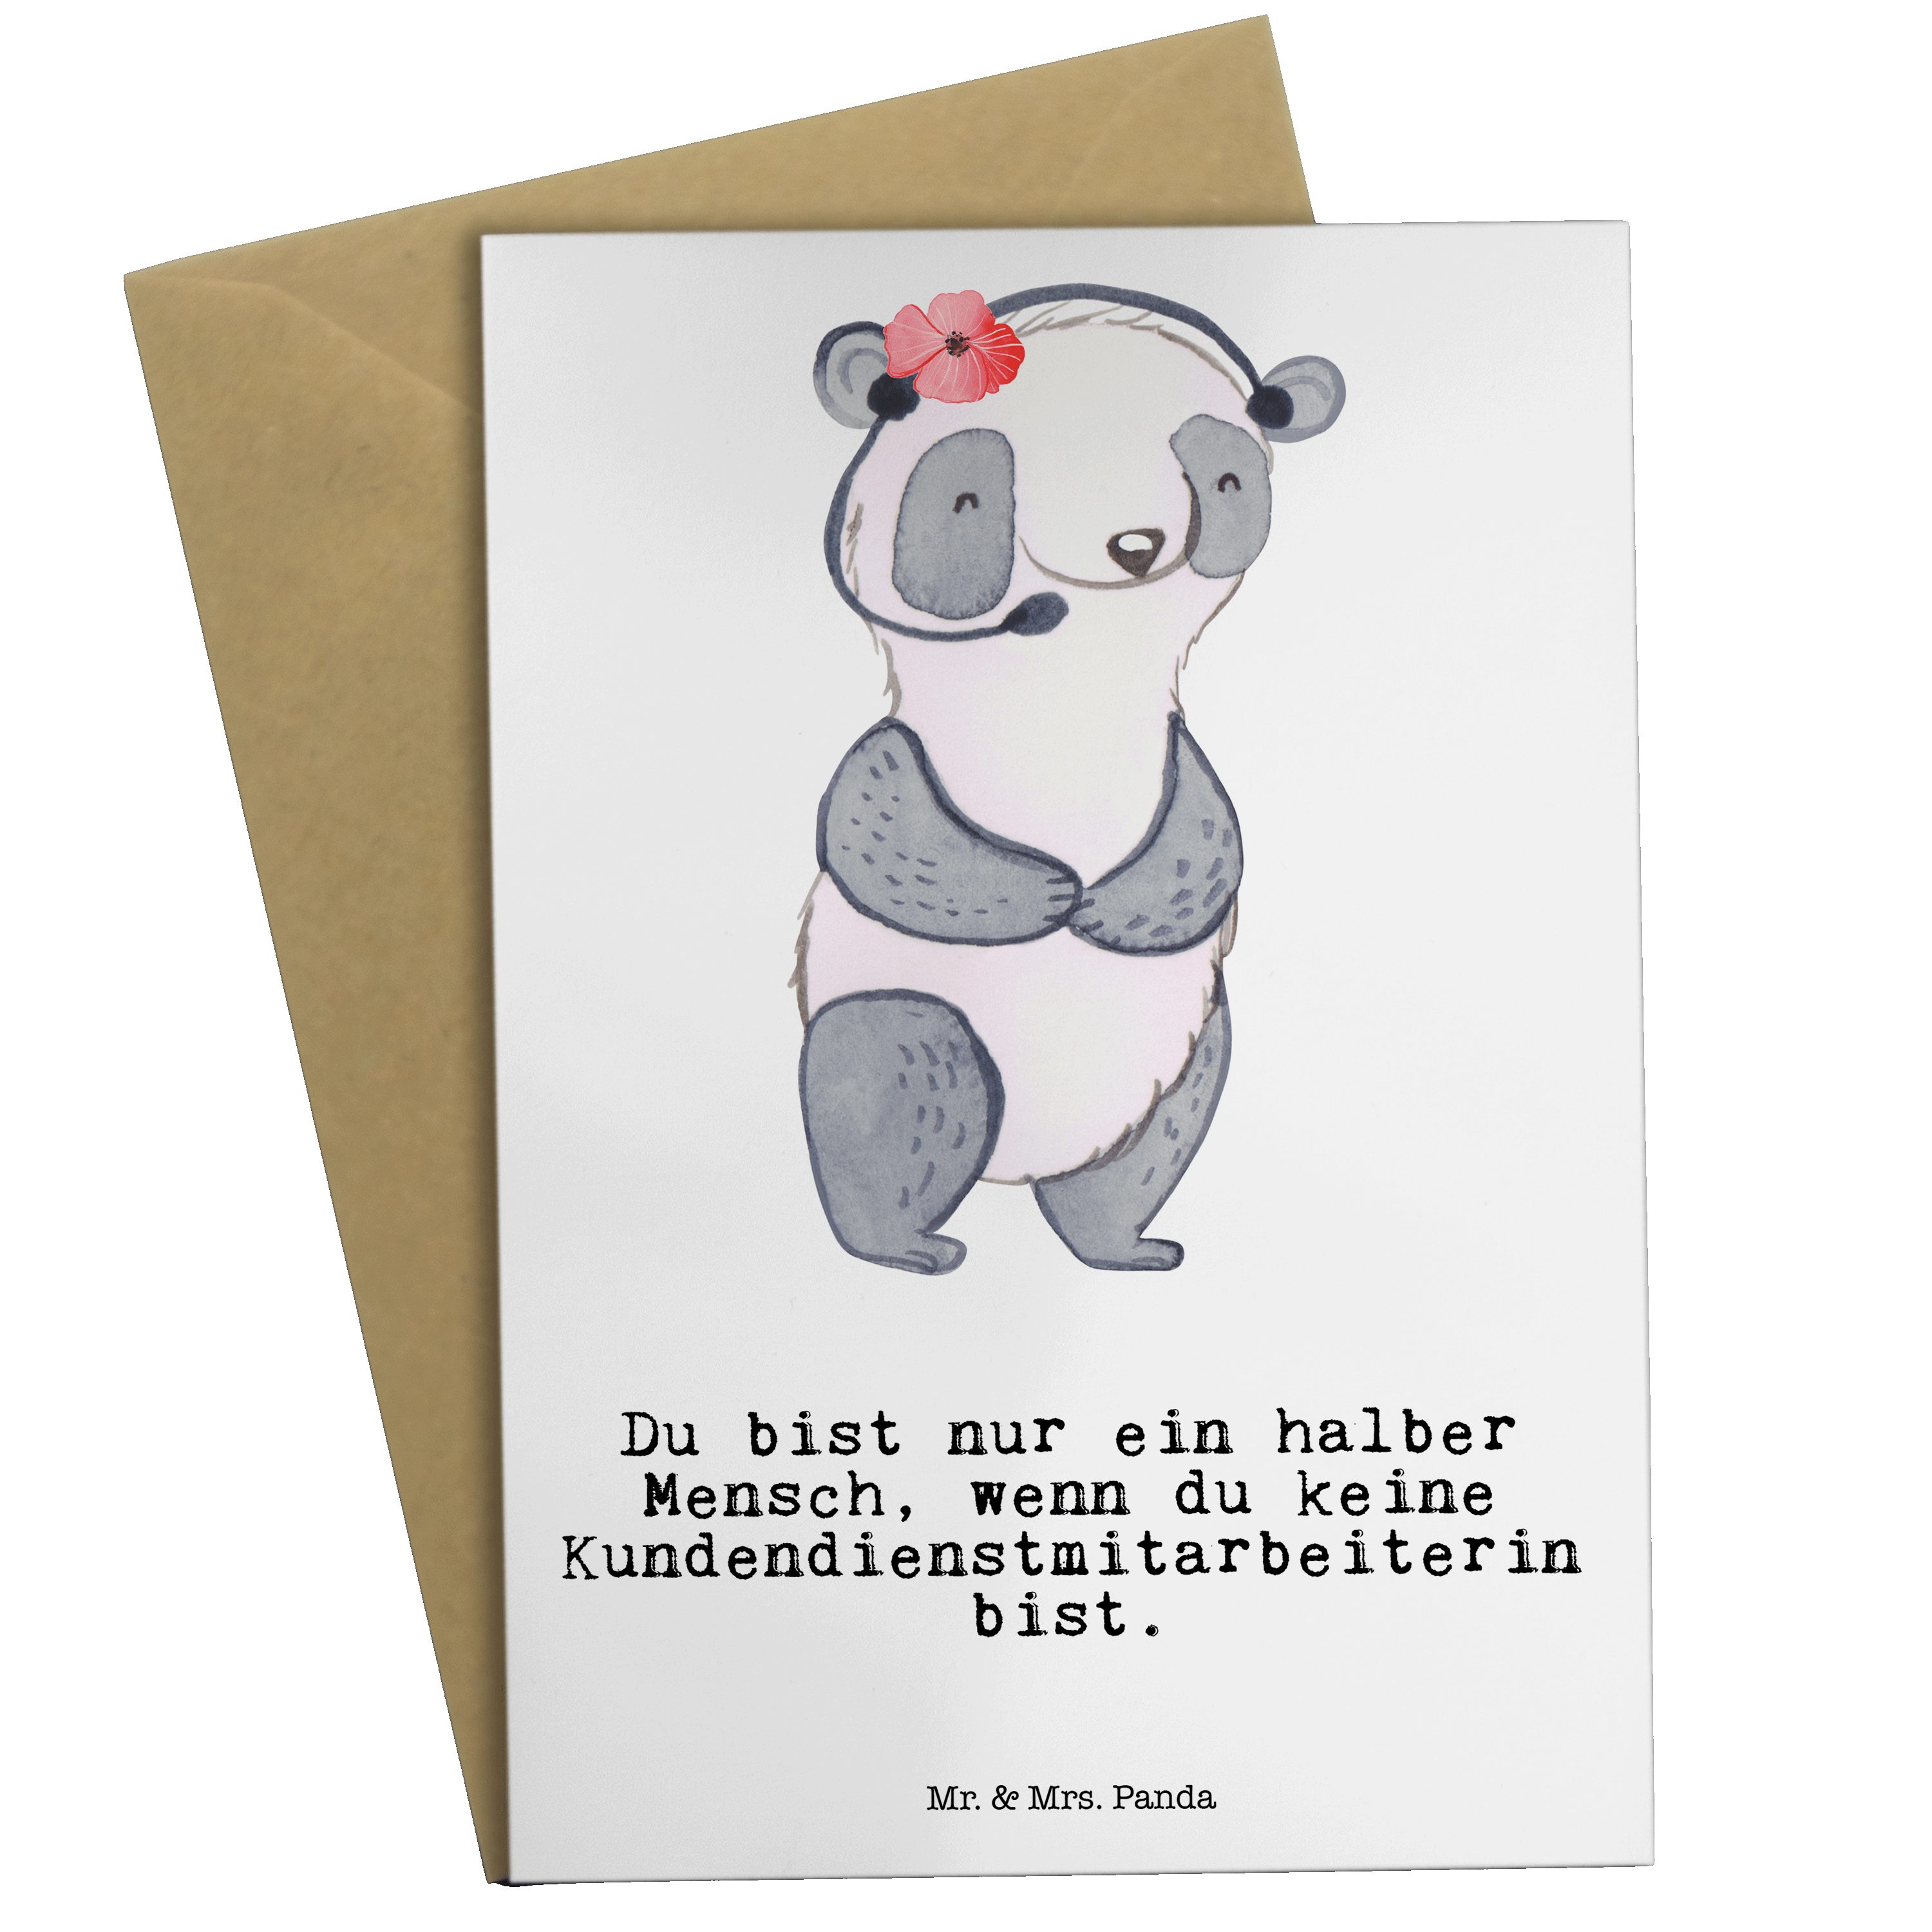 Mr. & Mrs. Panda Grußkarte Kundendienstmitarbeiterin mit Herz - Weiß - Geschenk, Danke, Callcent